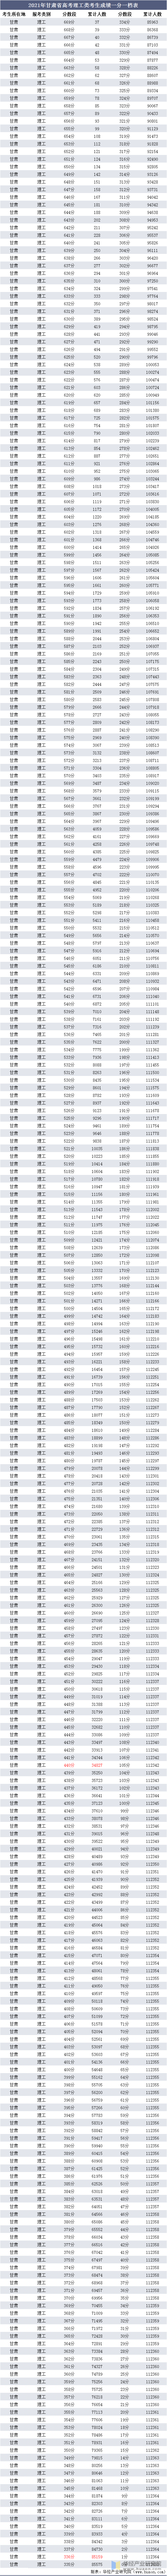 2021年甘肃省高考理工类考生成绩一分一档表